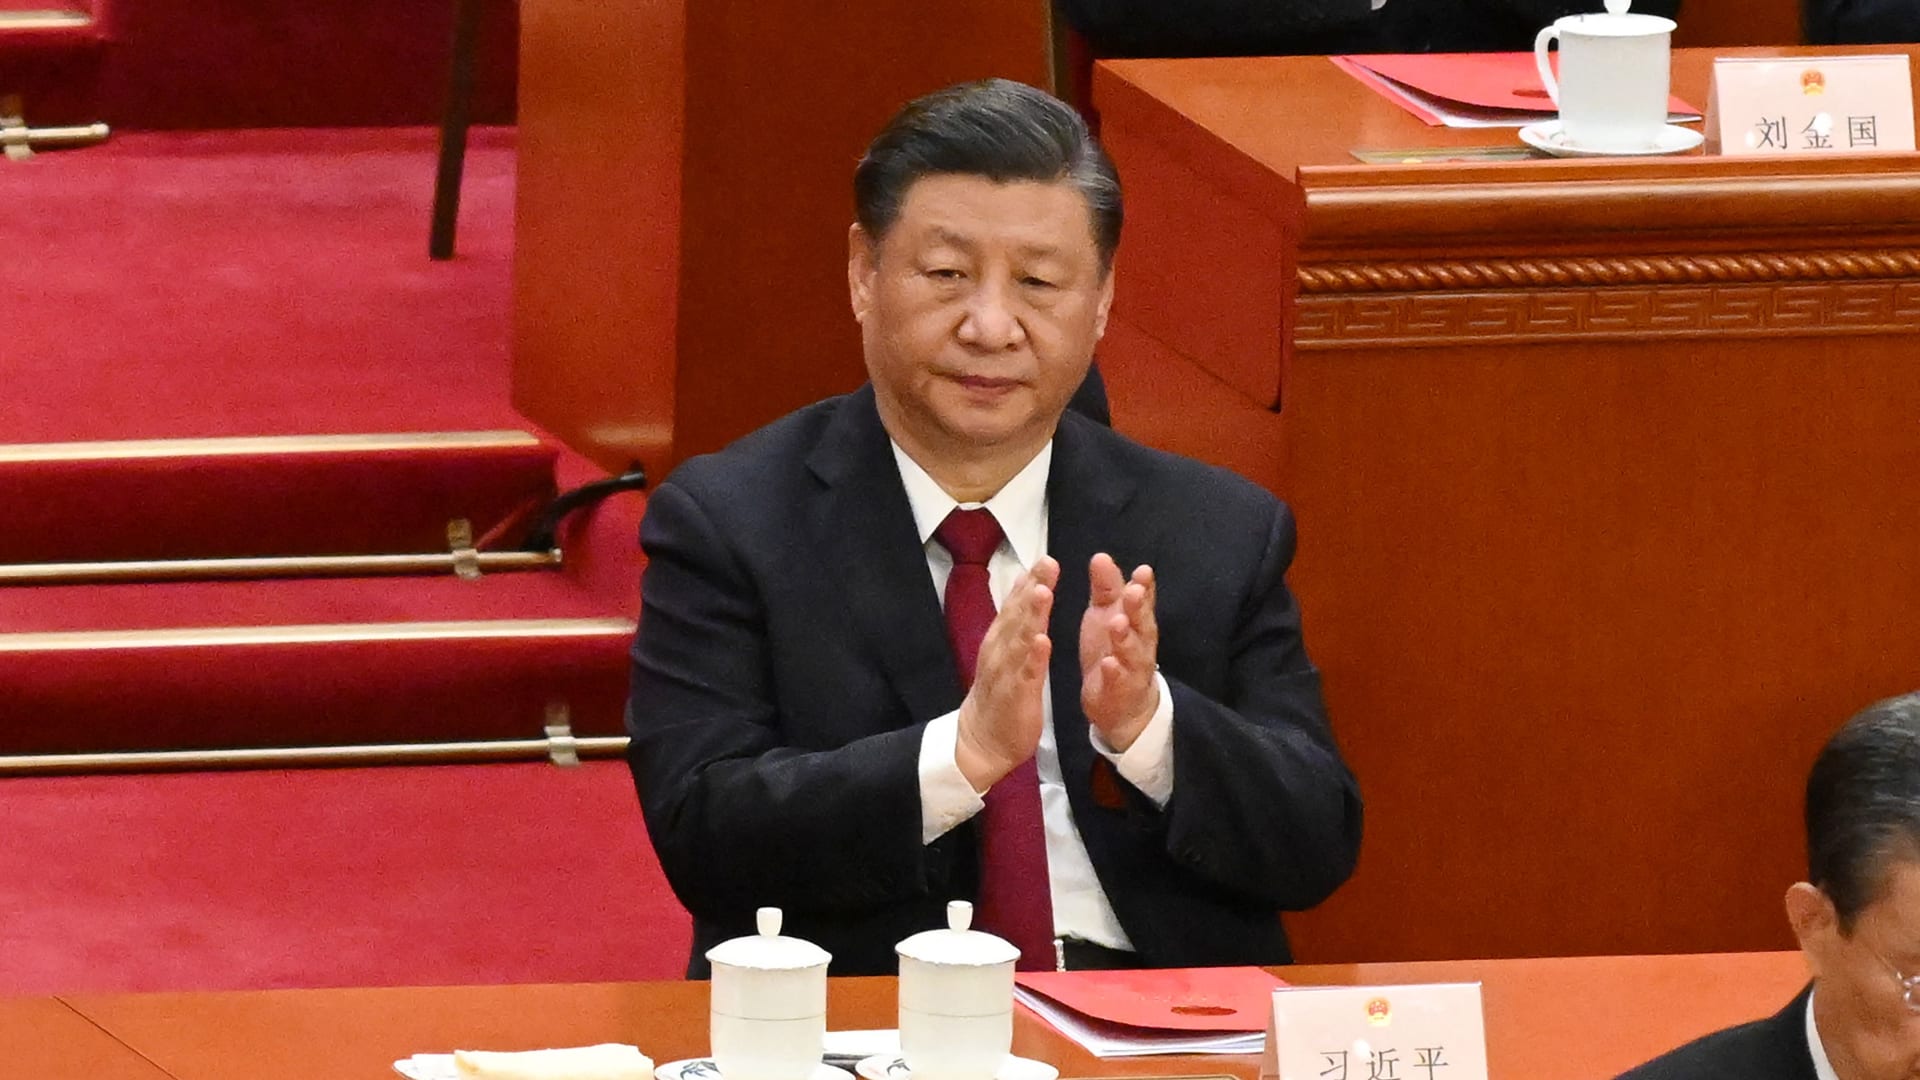 في أول خطابات الولاية الثالثة.. الرئيس الصيني يتعهد بإعادة توحيد تايوان وتحديث الجيش